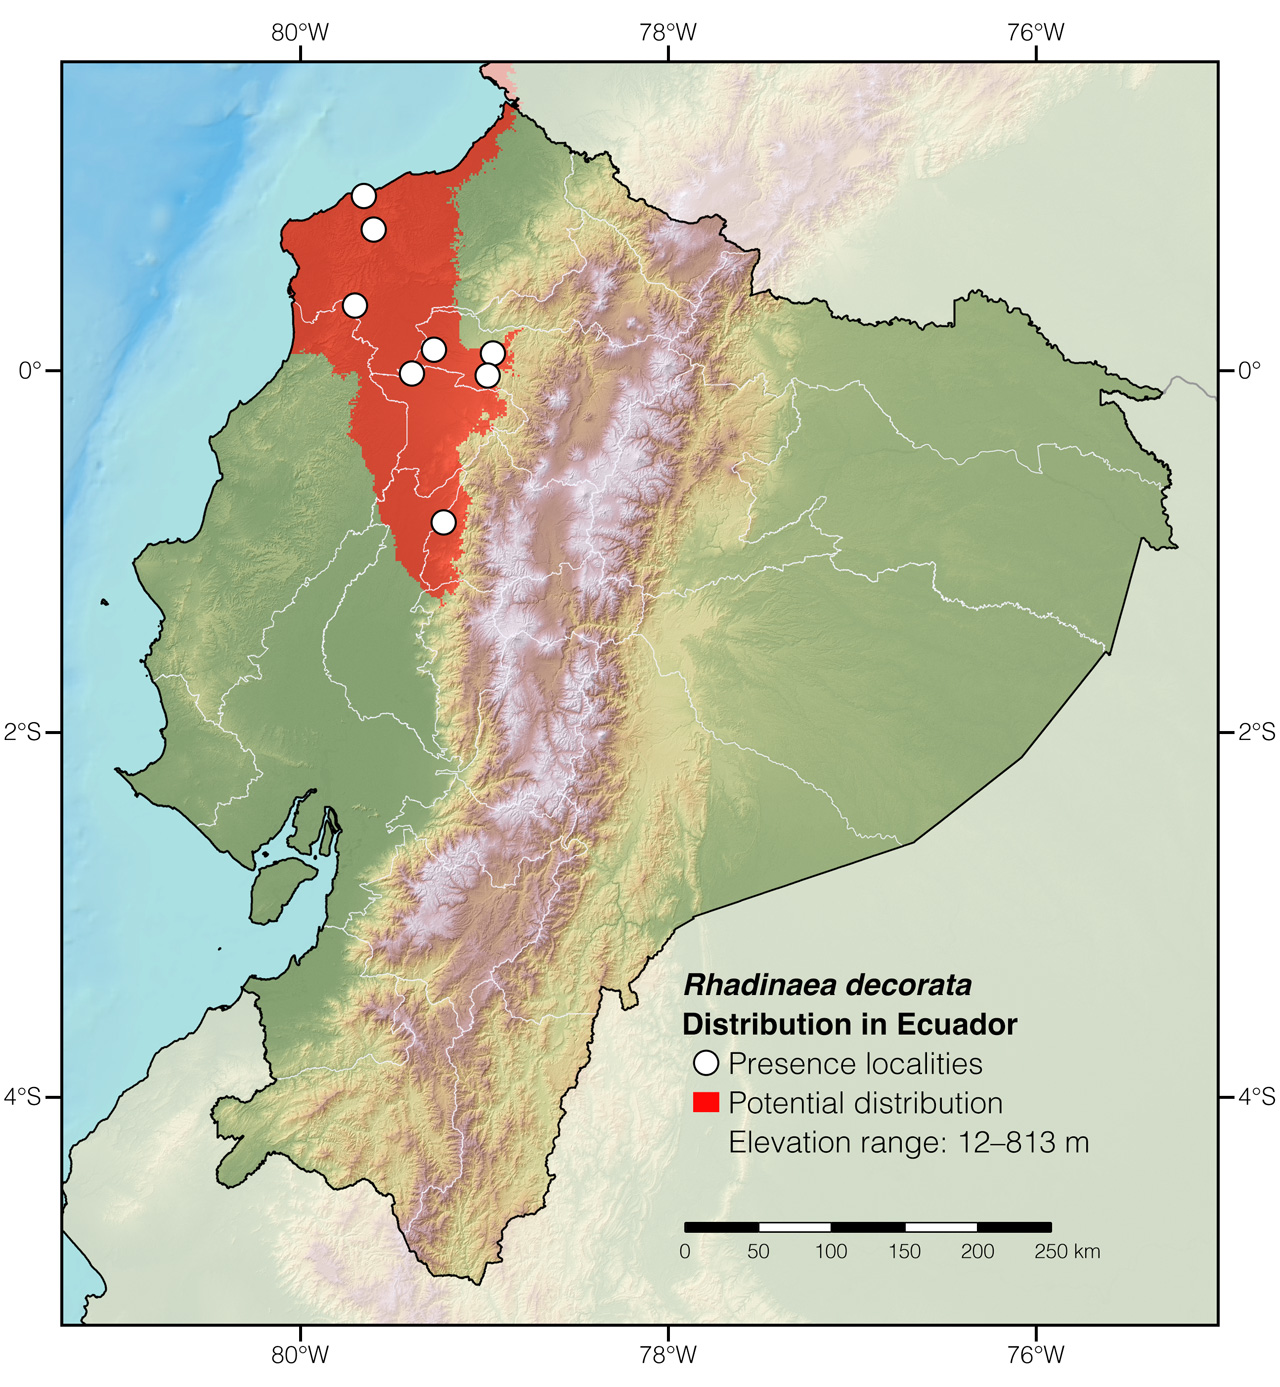 Distribution of Rhadinaea decorata in Ecuador